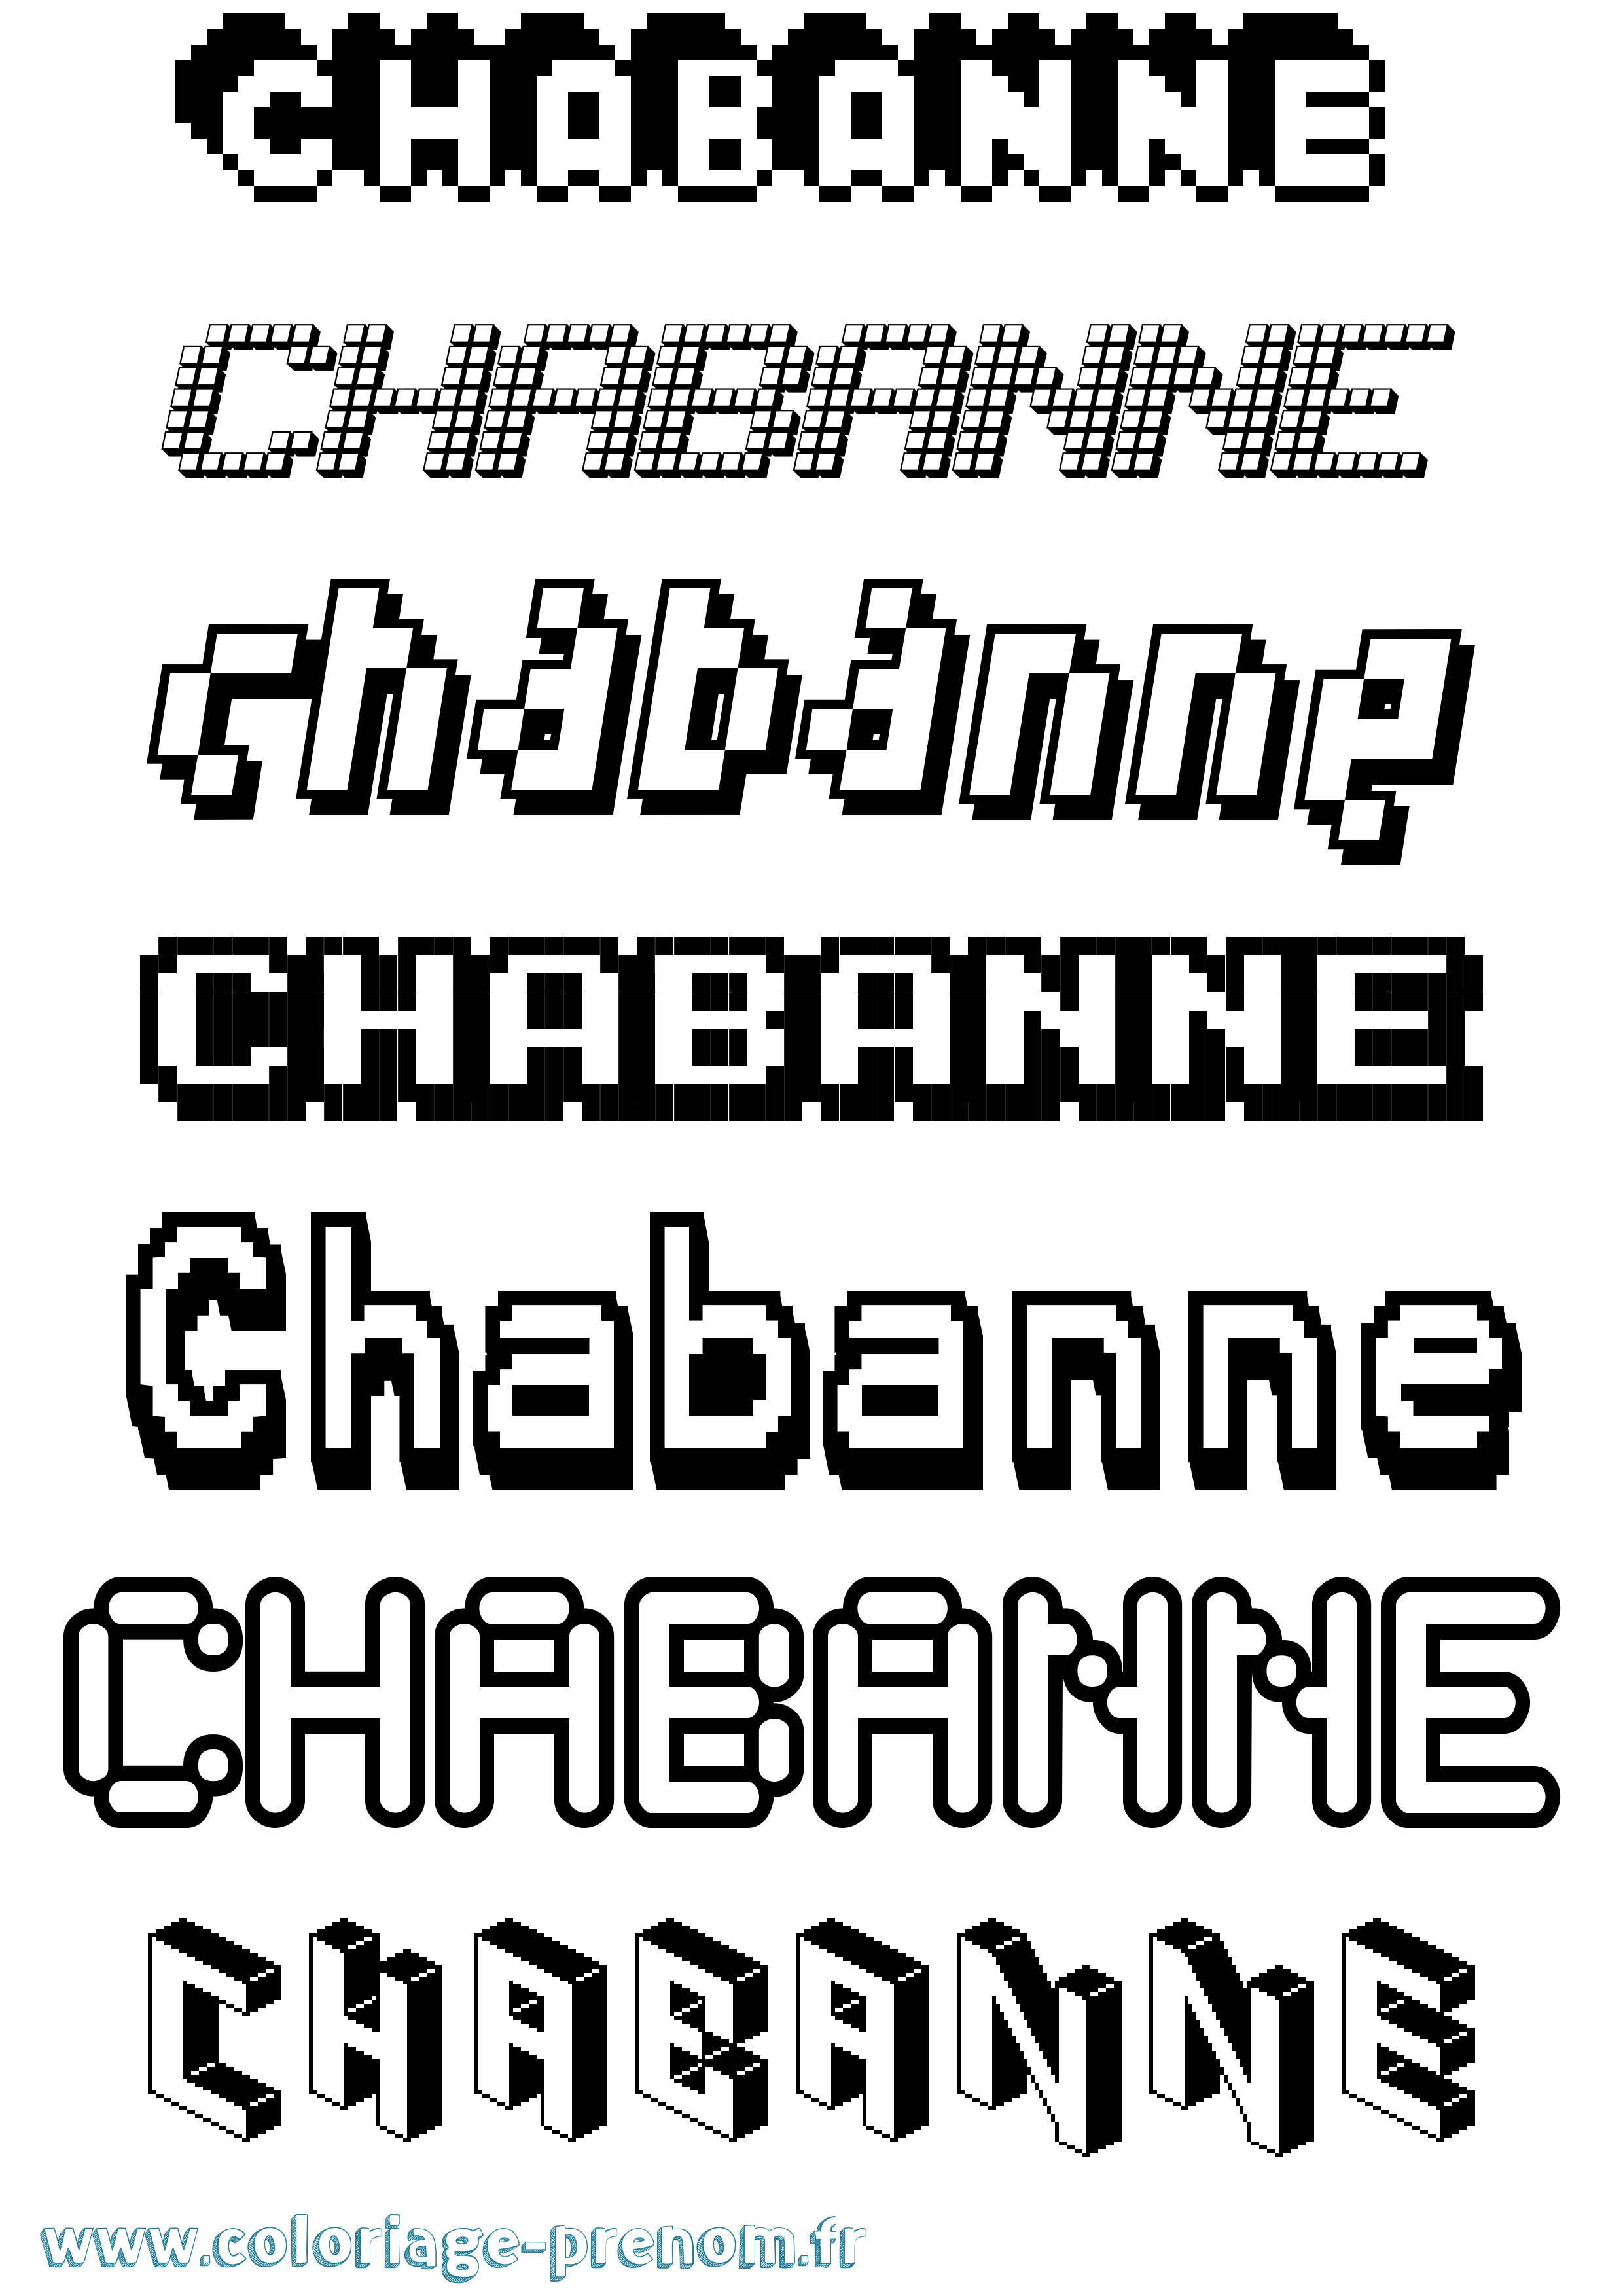 Coloriage prénom Chabanne Pixel